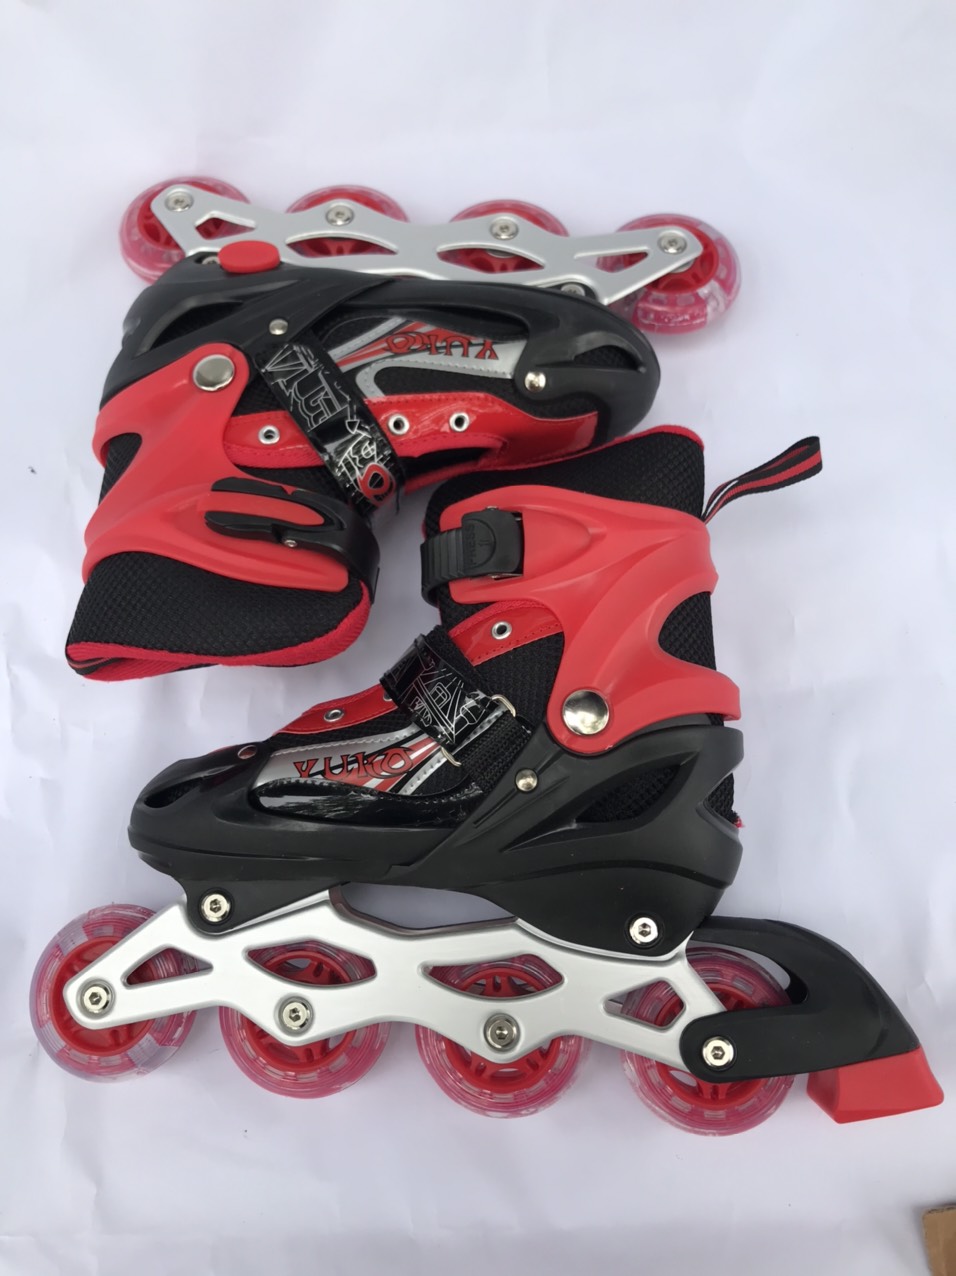 Giày trượt patin cao cấp dành cho trẻ em đỏ đen